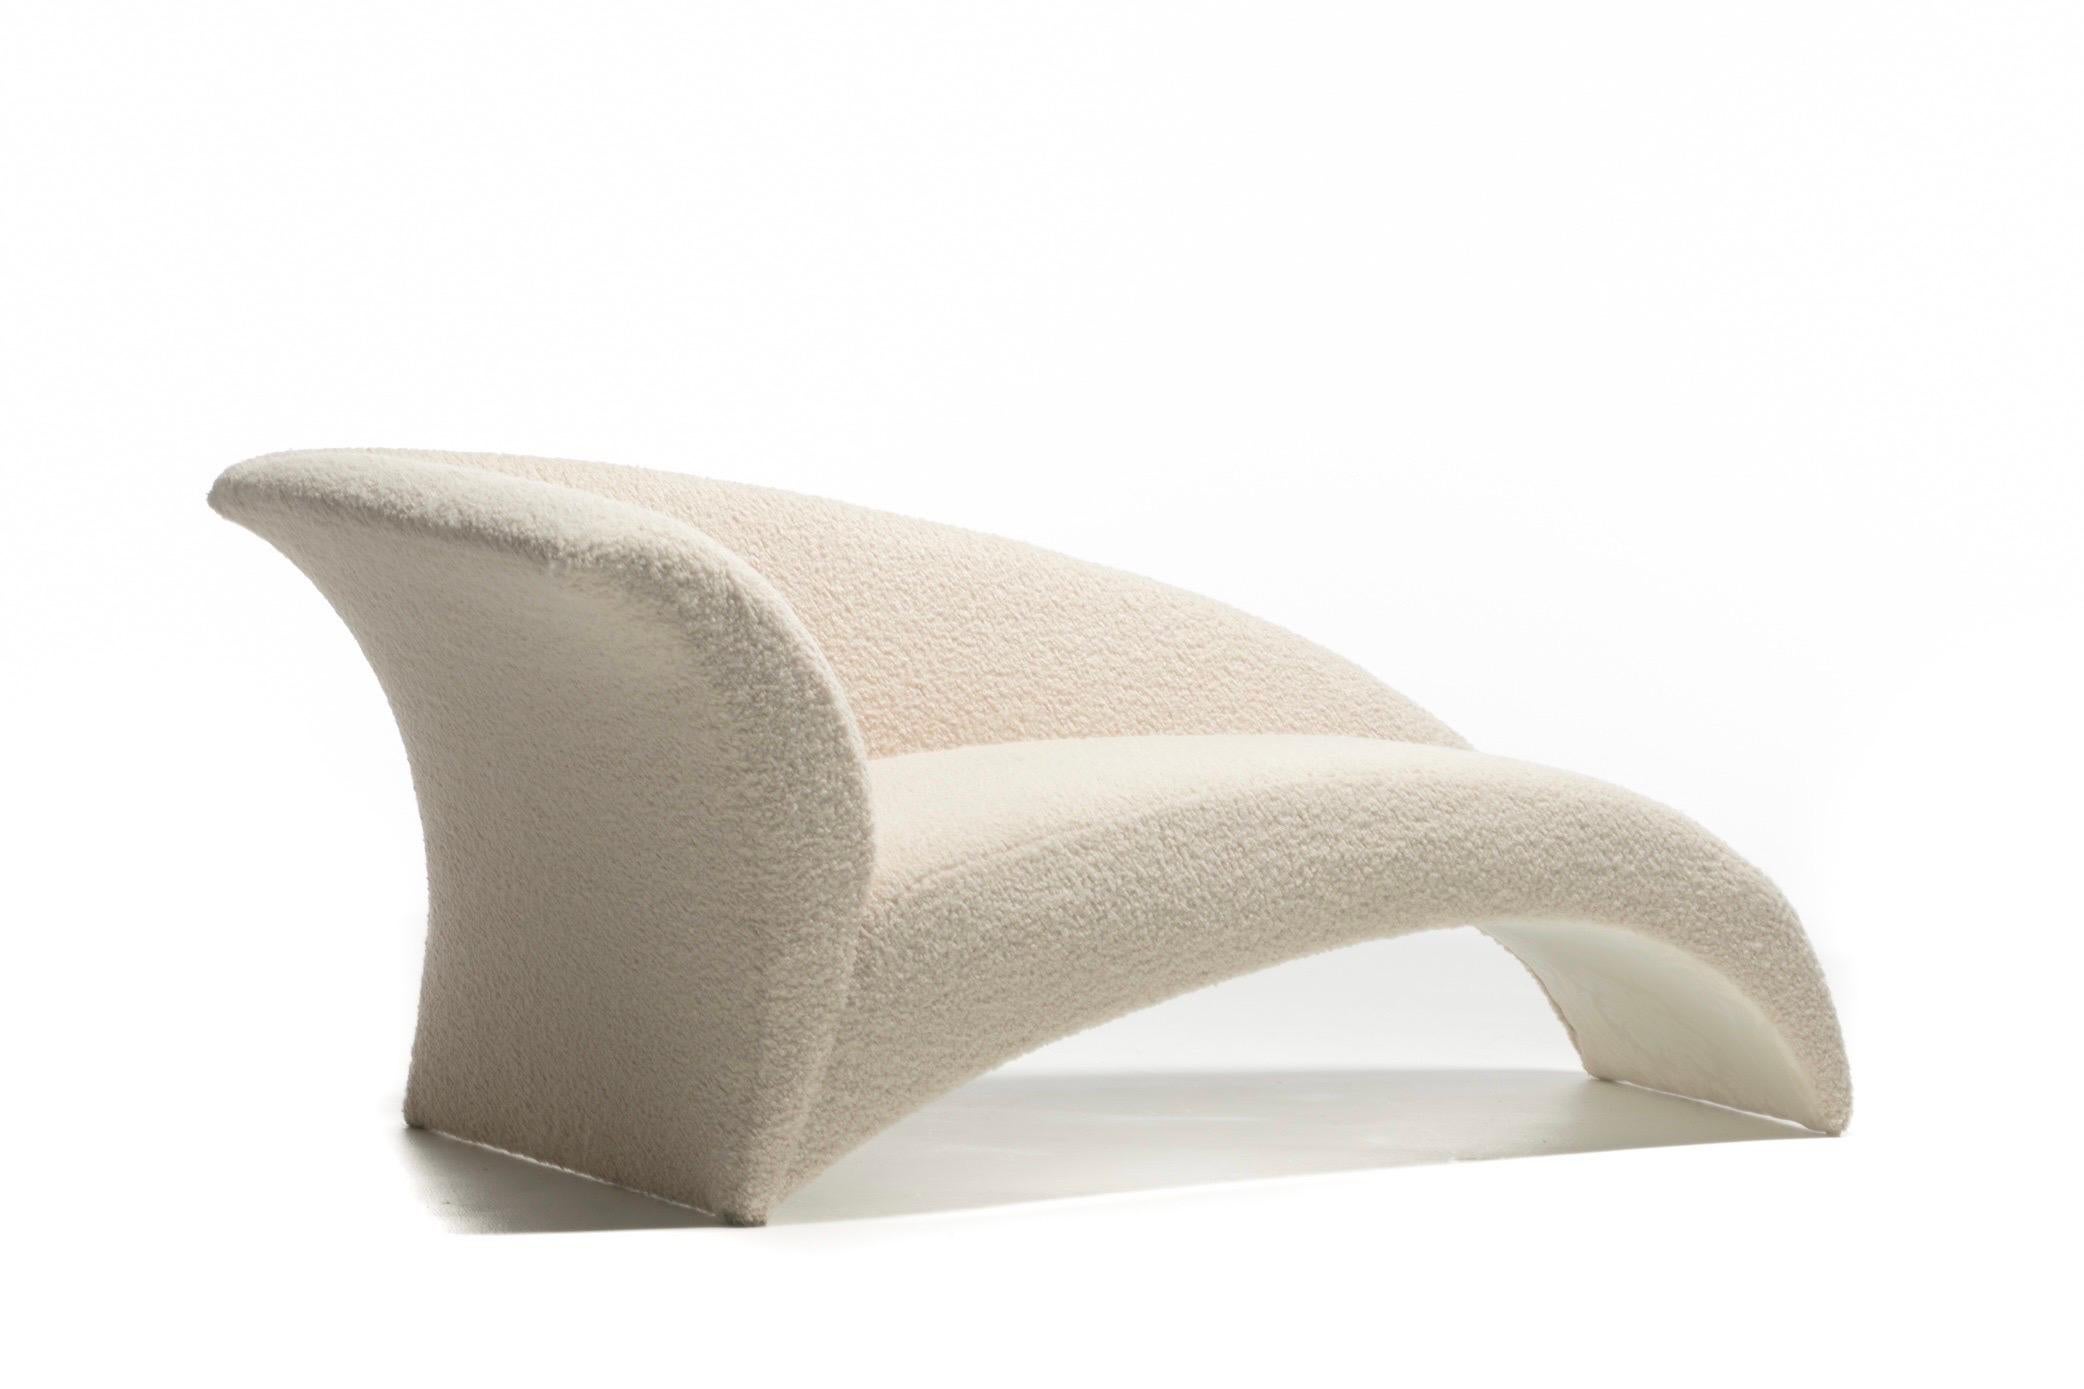 Véritable œuvre d'art sculpturale, laissez-vous emporter par cette exquise chaise longue post-moderne créée par le célèbre designer Vladimir Kagan pour Directional. Le glamour moderne. Chic et grand art sans aucun doute. Contrairement aux chaises